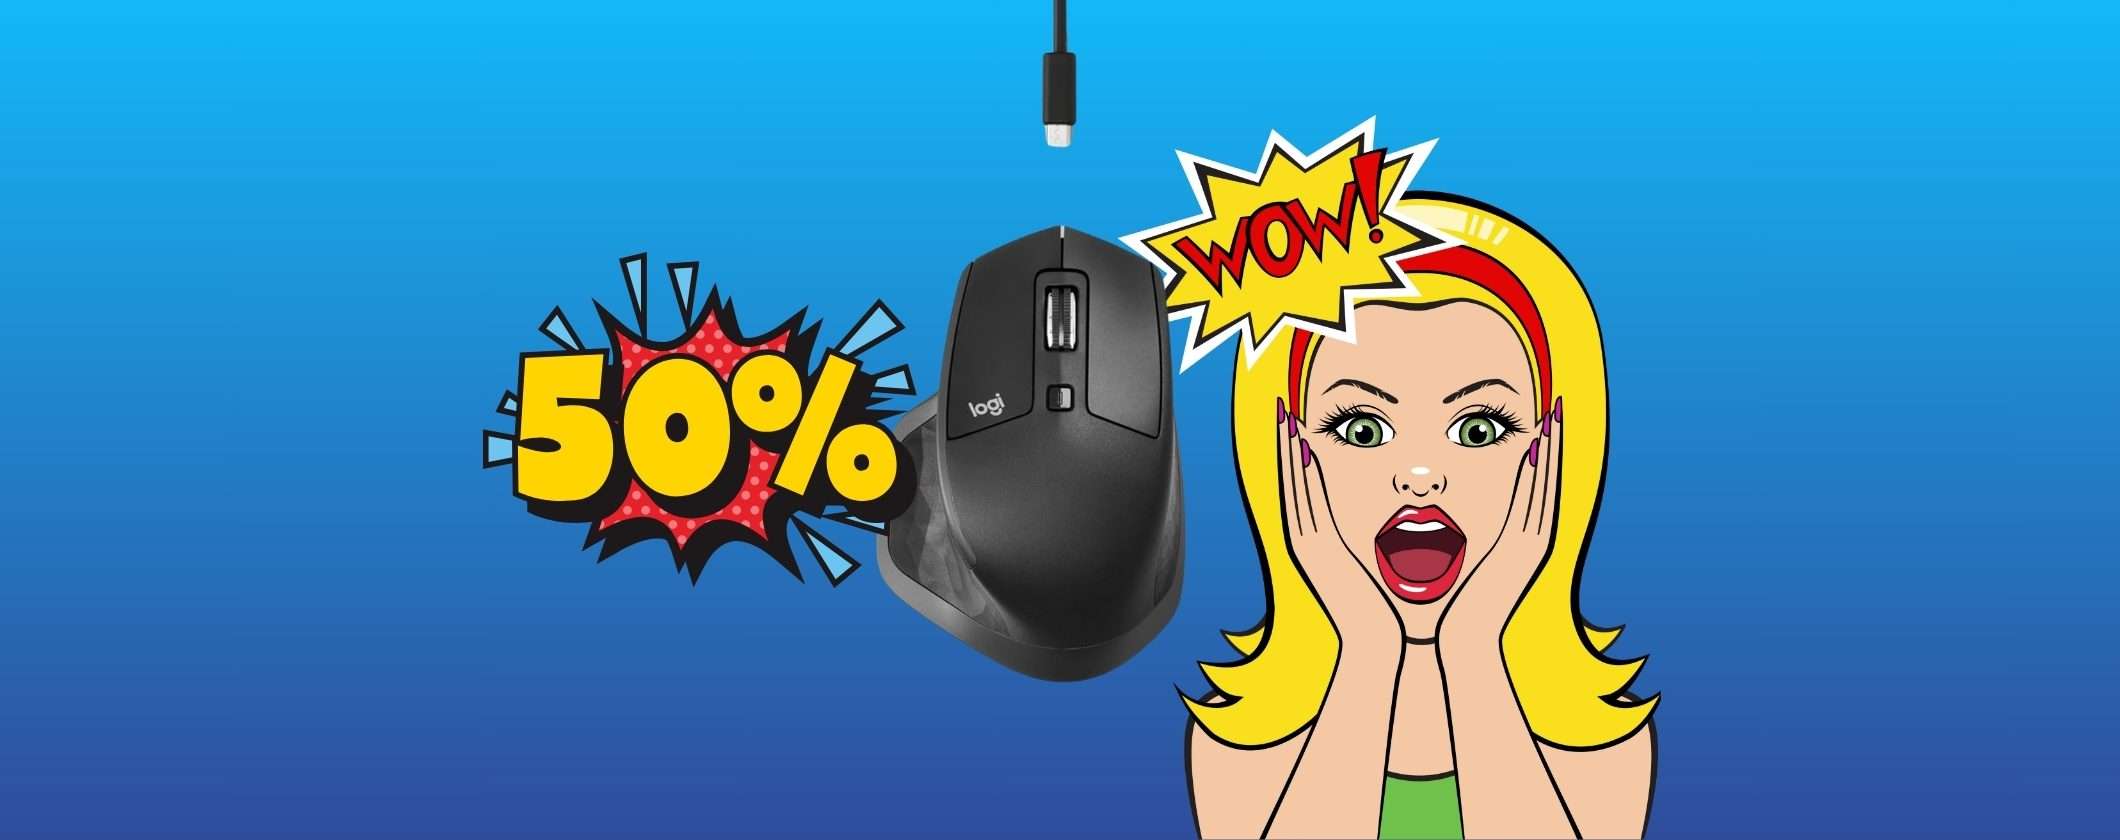 Logitech MX Master 2S Mouse al 50% di SCONTO con le Offerte di Primavera